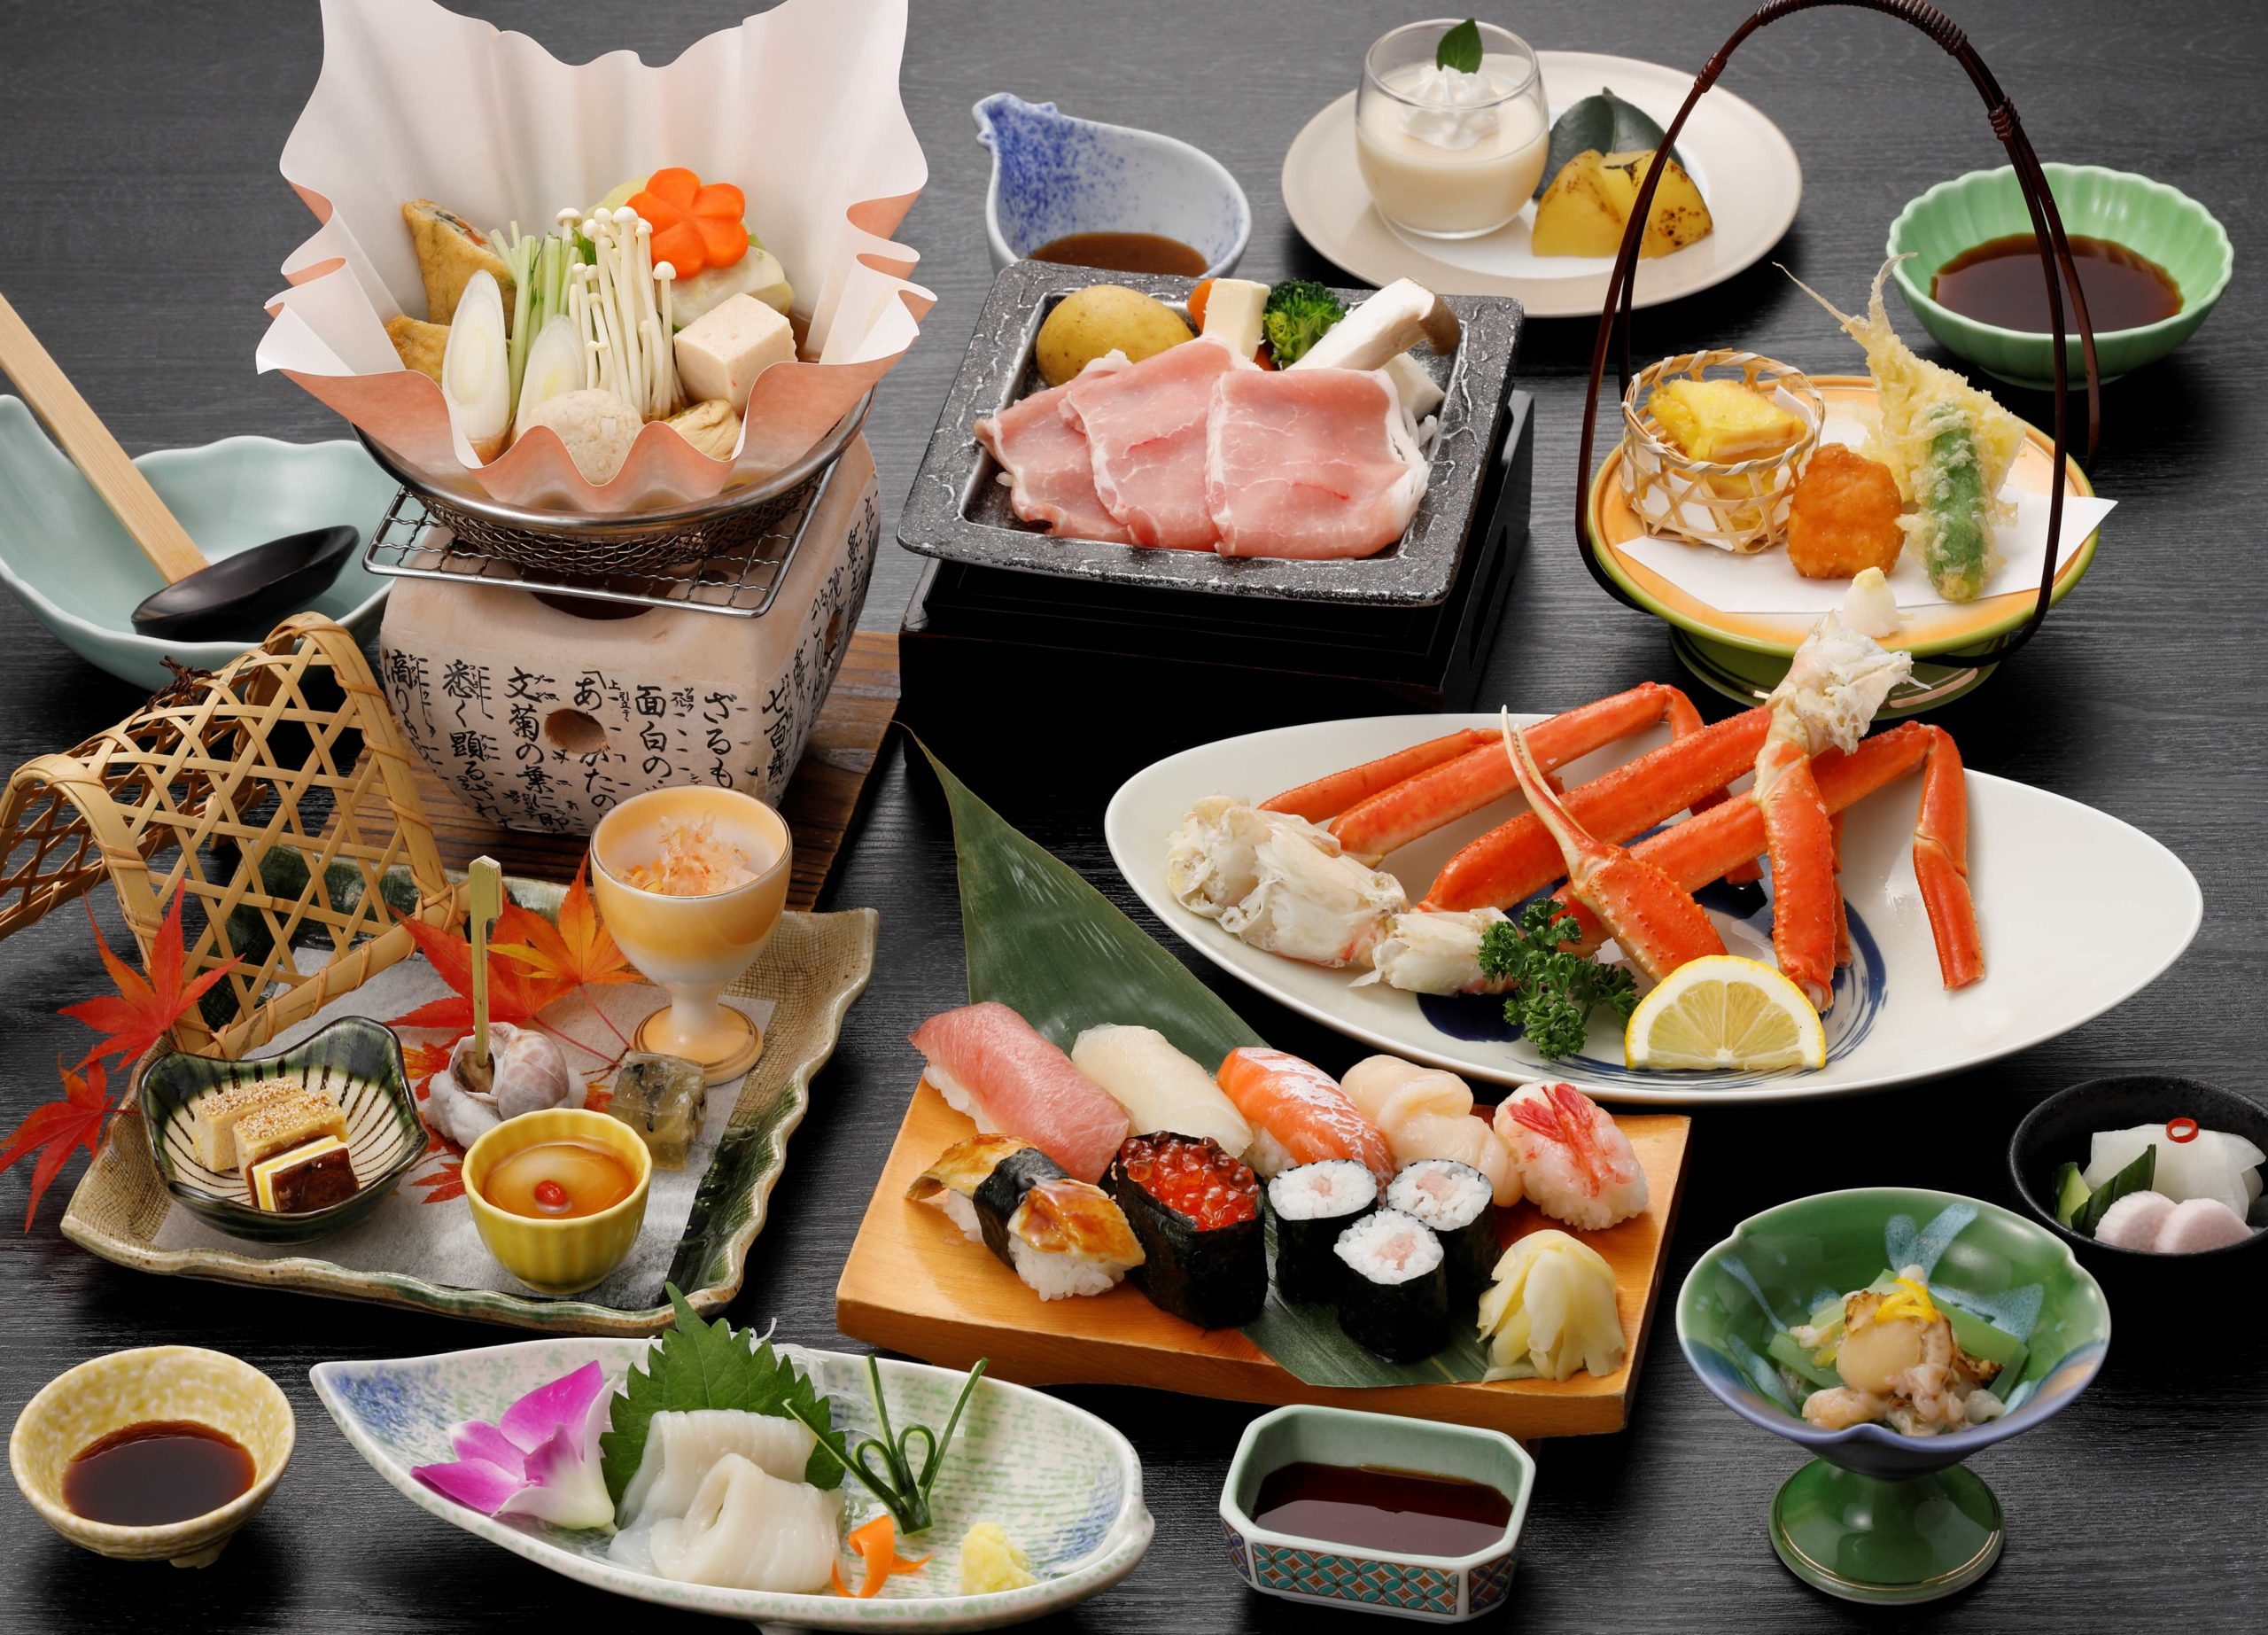 ずわい蟹食べ放題（90分）と握り寿司（県産ホタテ、ヒラメ入り！）付会席プラン 